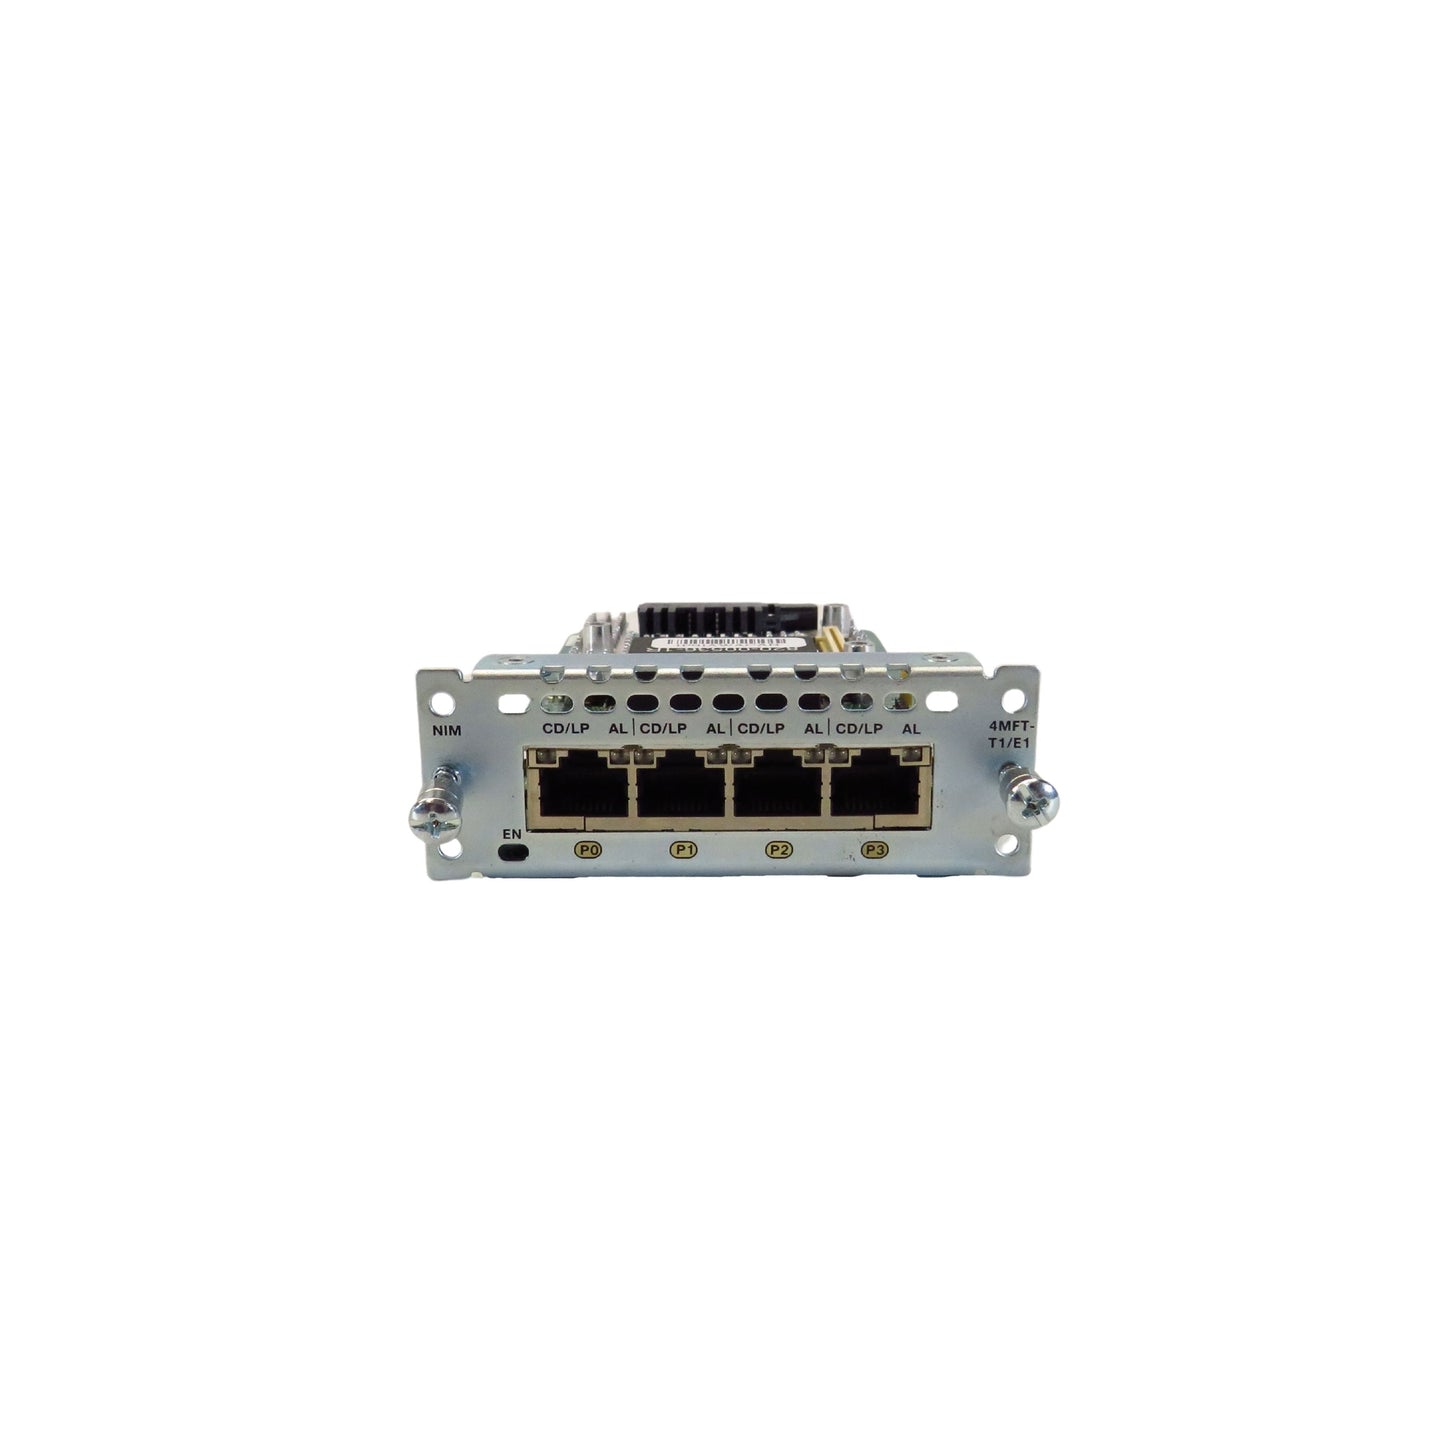 Cisco NIM-4MFT-T1/E1 4-Port Multi-flex Trunk Voice/Clear-channel T1/E1 Module (Refurbished)